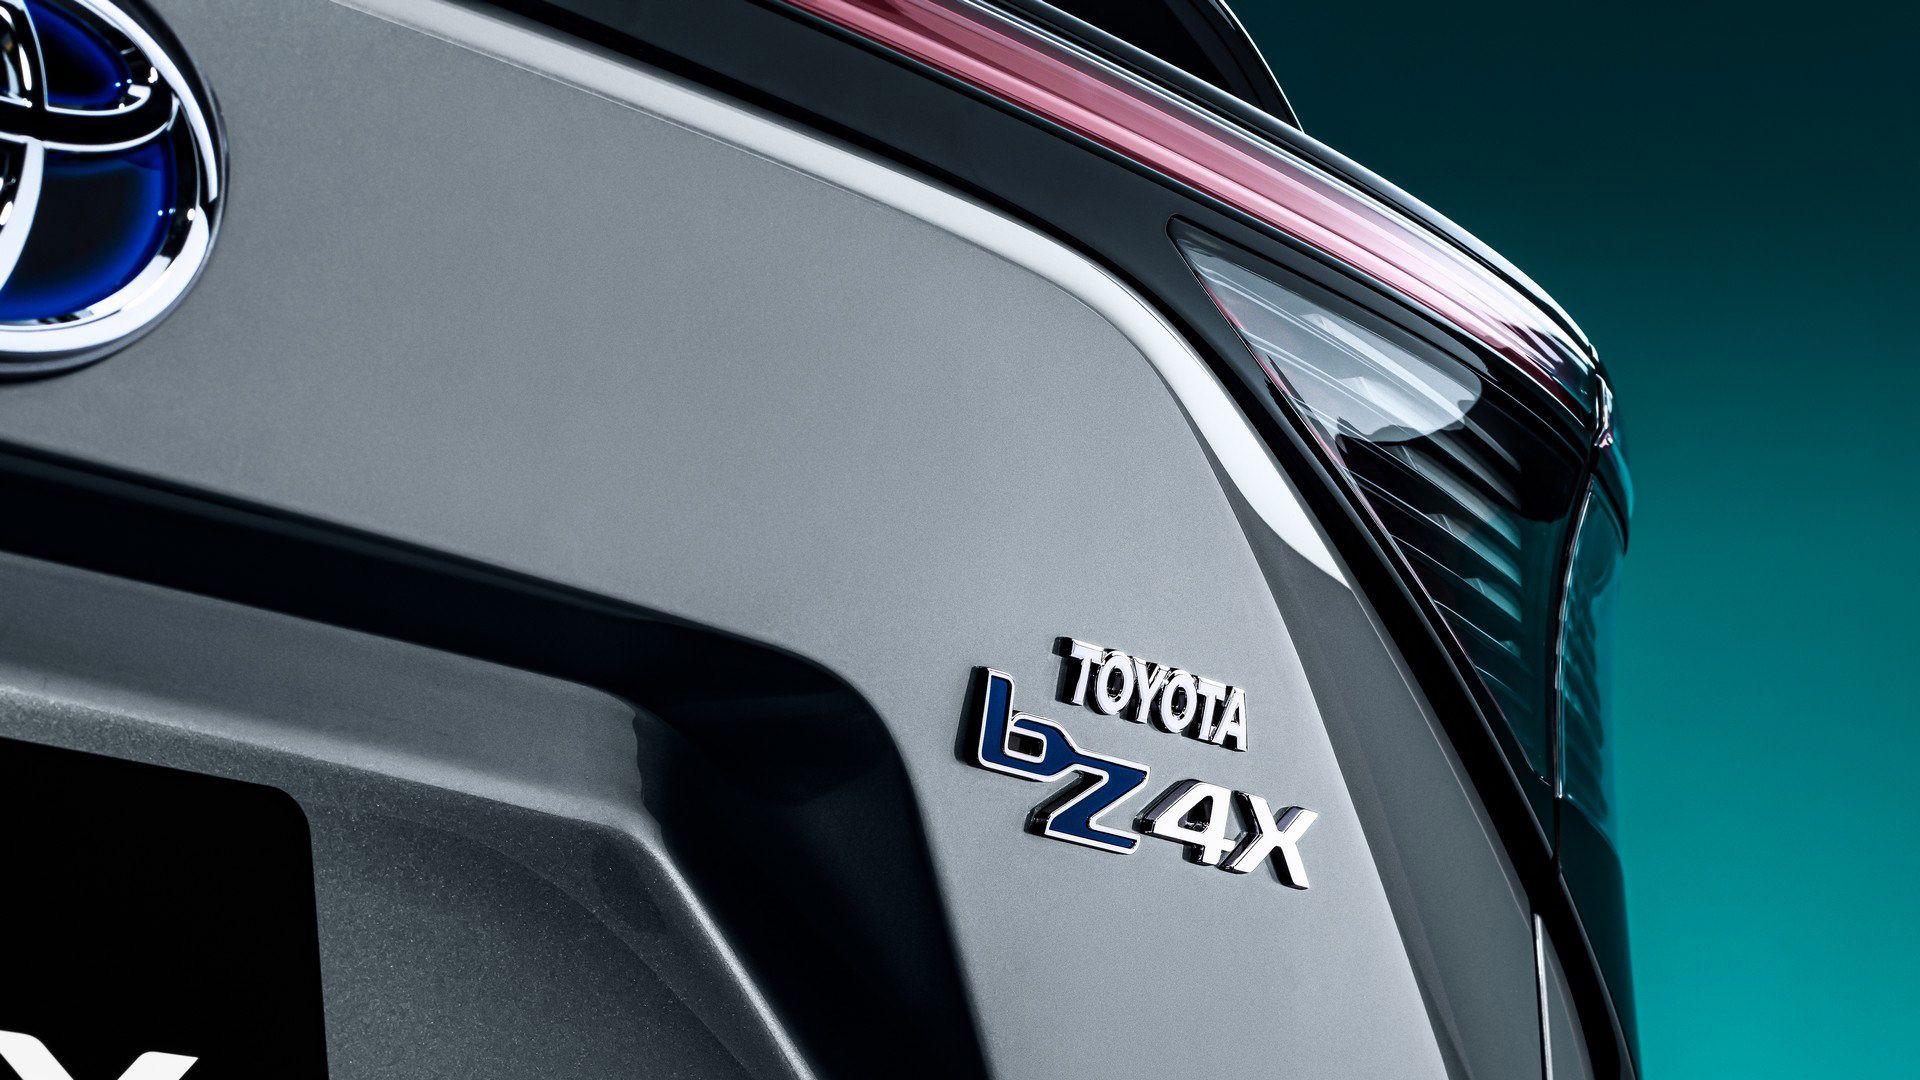 مرجع متخصصين ايران چراغ عقب كراس اور مفهومي برقي تويوتا / Toyota bZ4X Concept